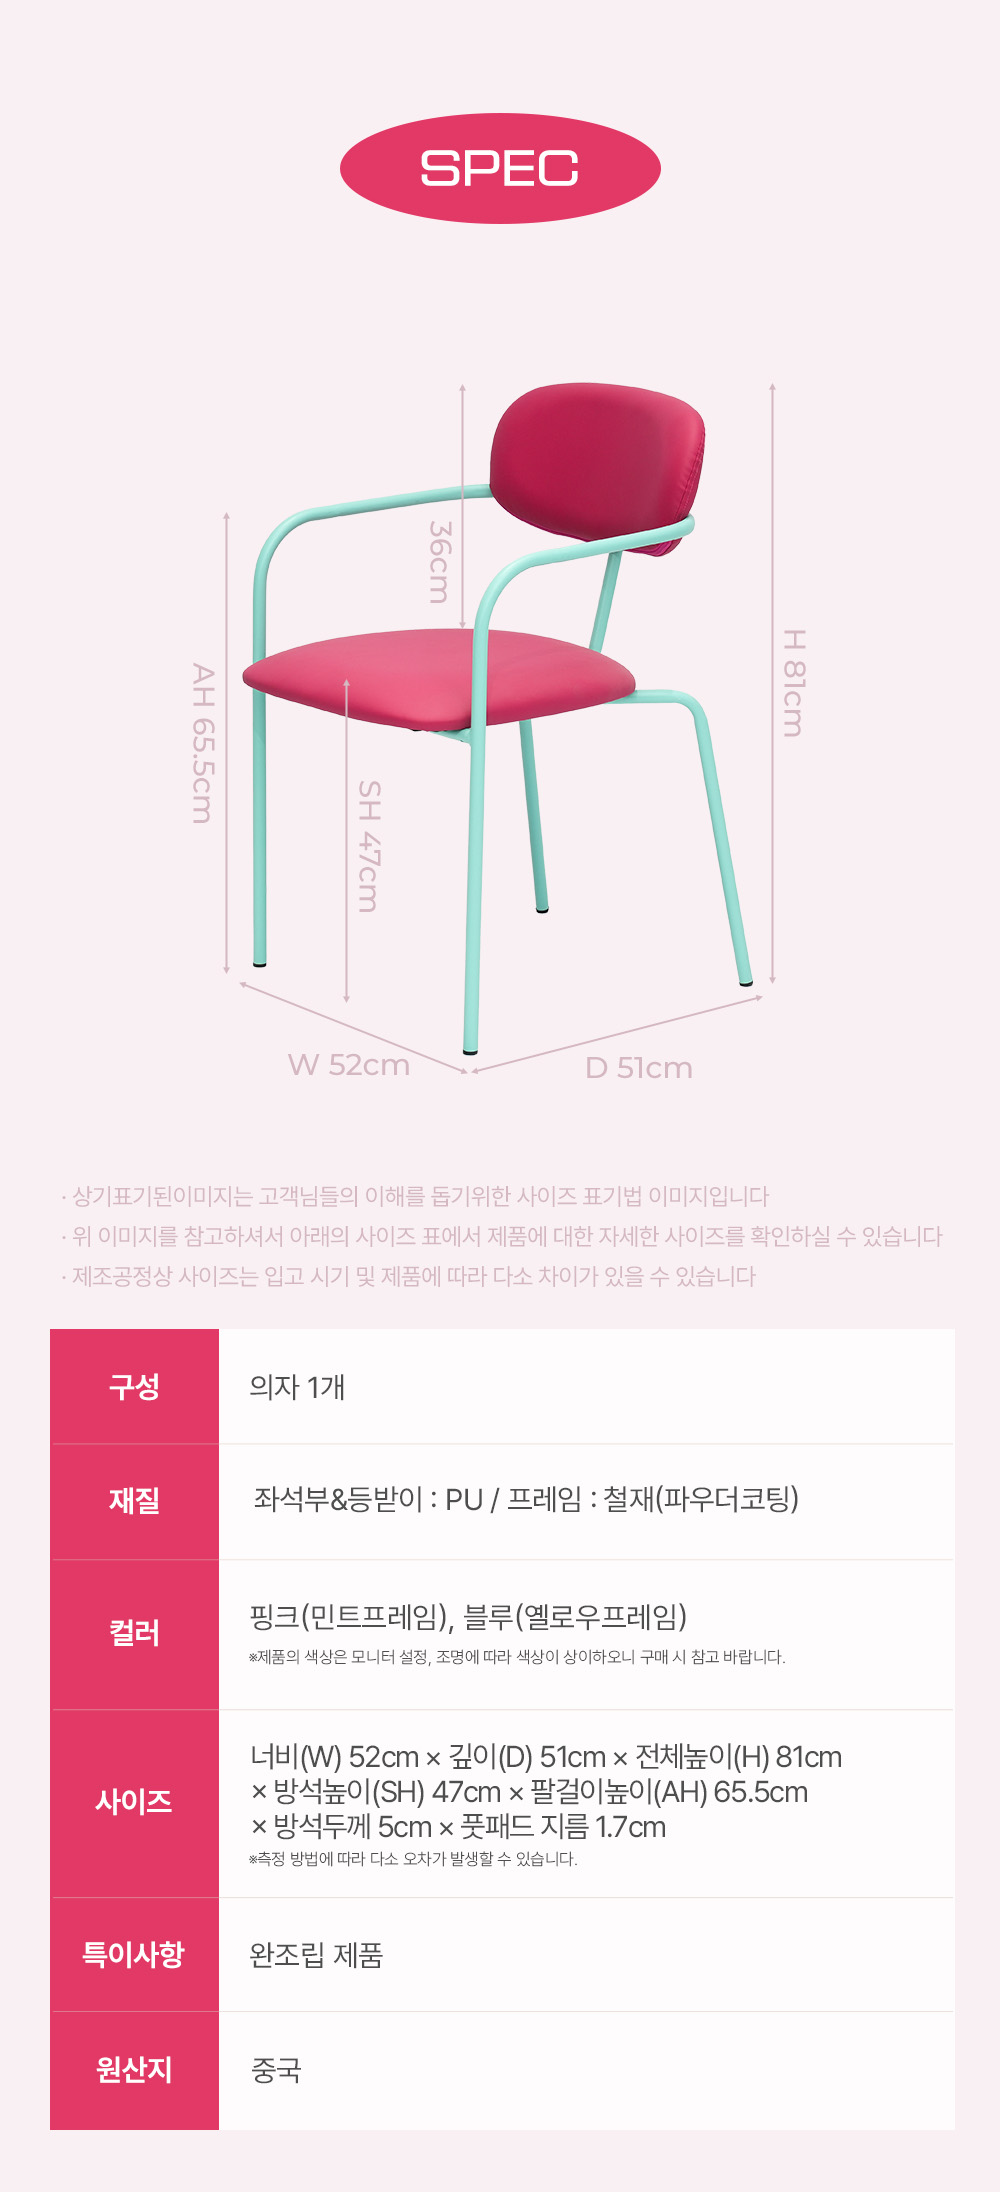 피카소가구 아트웨이 키워드 : 앤유체어 가죽의자 철재의자 유니크 핑크의자